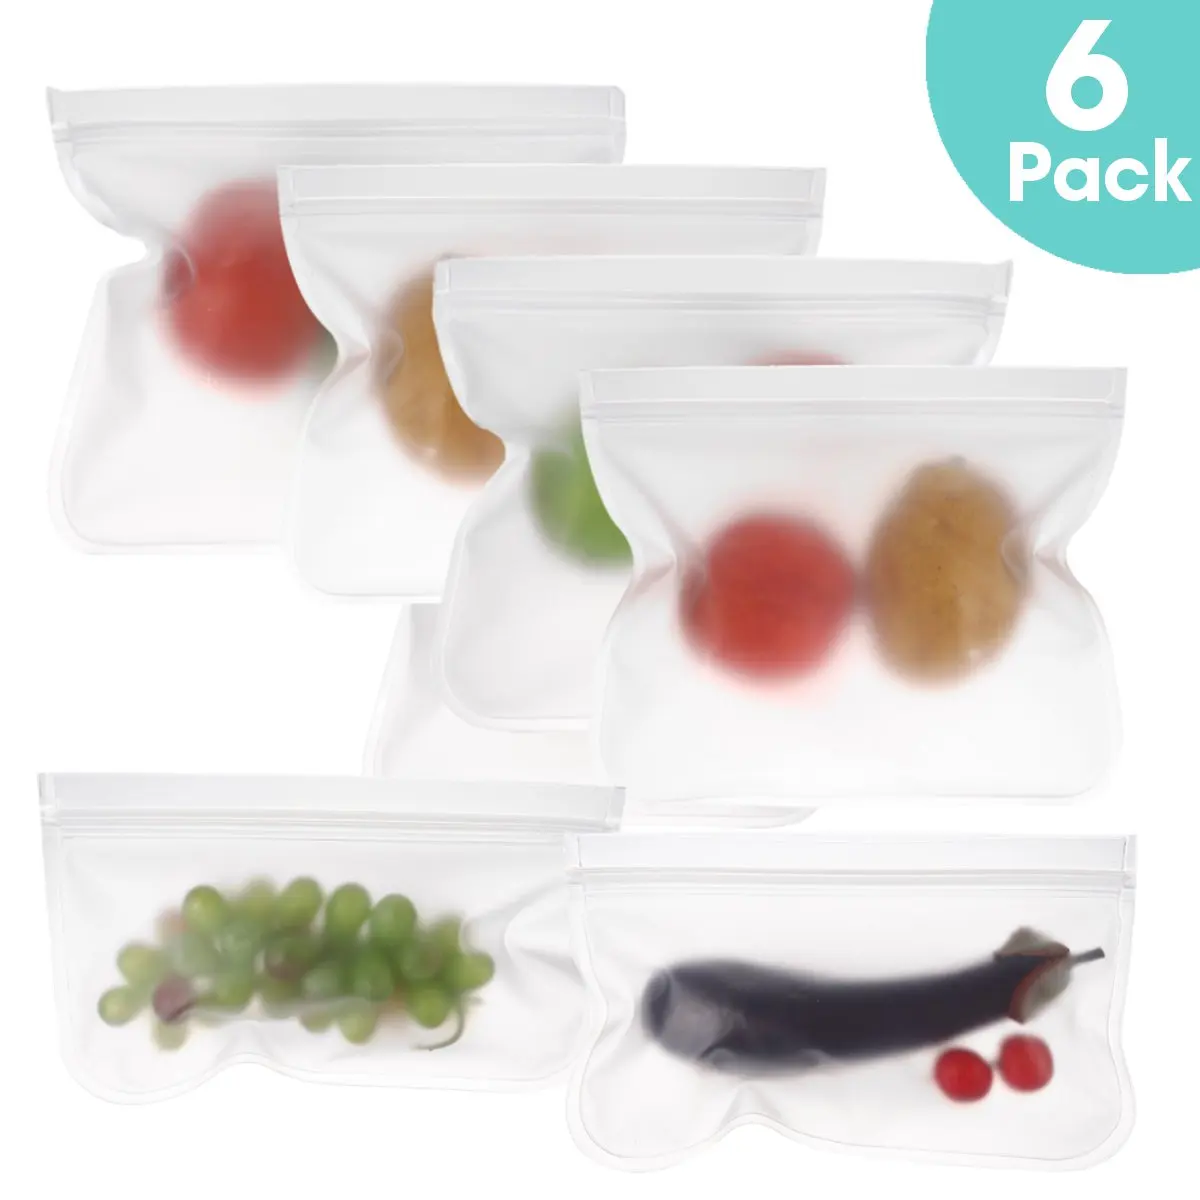 6 шт/12 шт многоразовая силиконовая сумка для хранения продуктов, сумка для морозильной камеры, сумка для хранения фруктов, Ланч-бокс, полупрозрачная матовая сумка для хранения продуктов PEVA - Цвет: 6 Pack Set